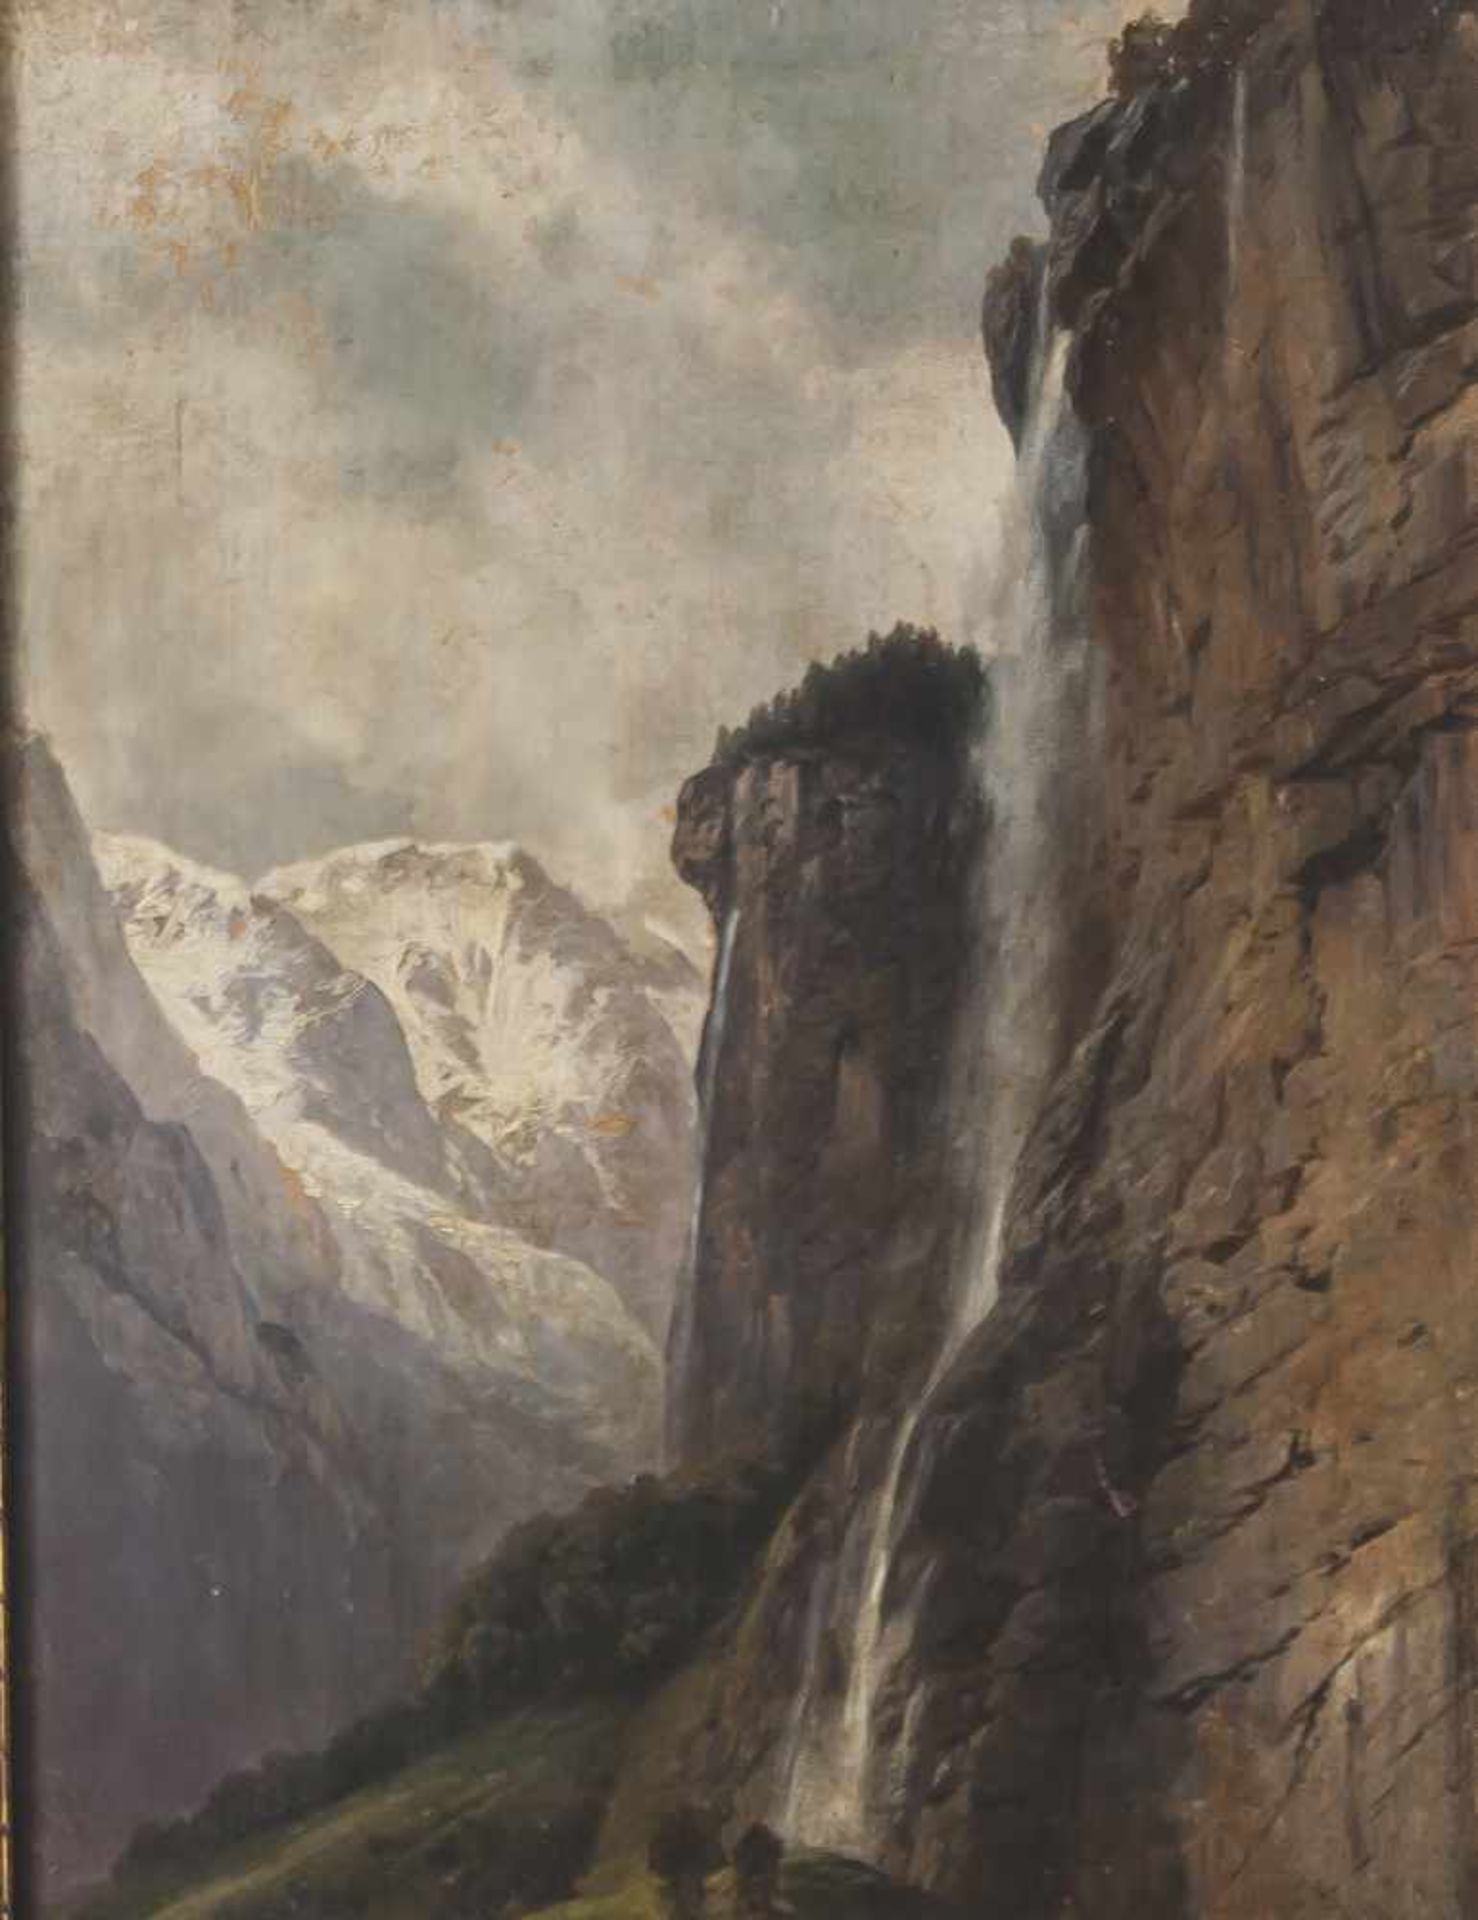 Millner, Karl (1825-1895), "Staubachfall", wohl Studie, Öl/Lw., Blick auf den Staubachfall in den